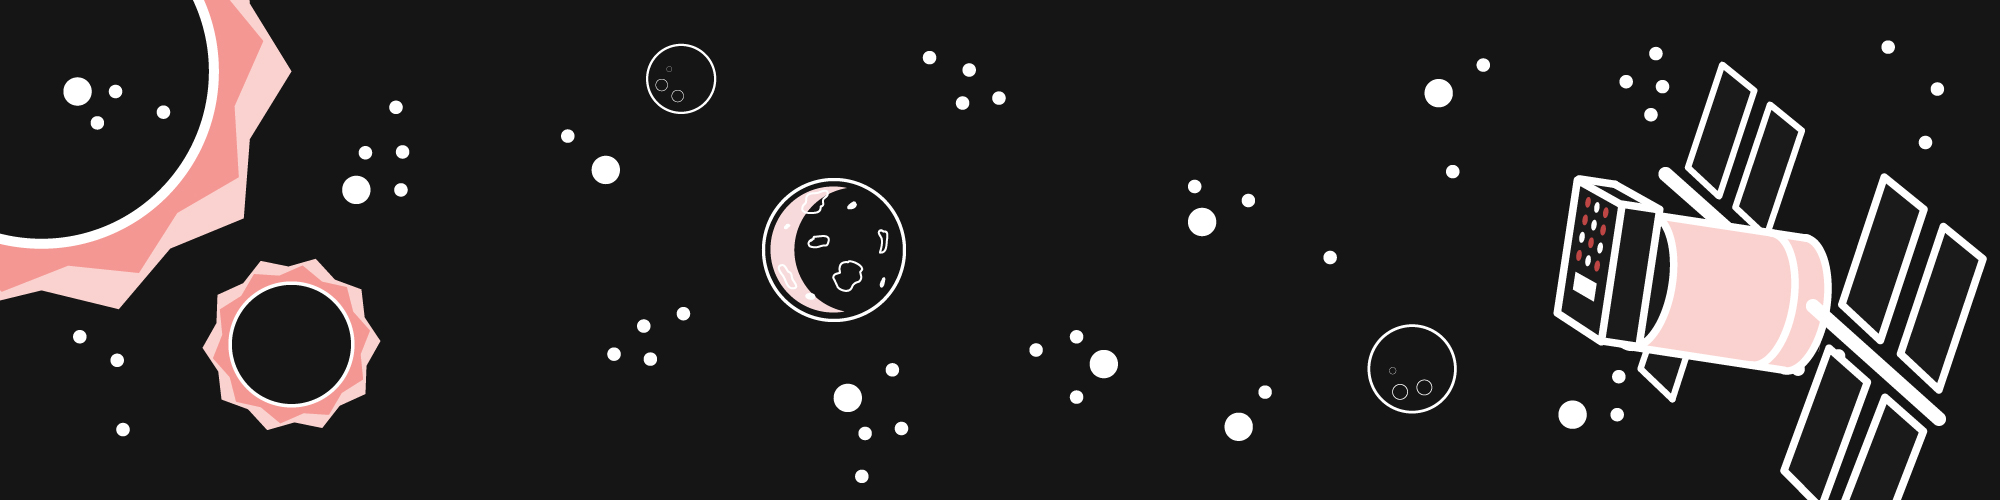 Illustration von Planeten, Asteroiden, Satelliten und Sternen vor schwarzem Hintergrund